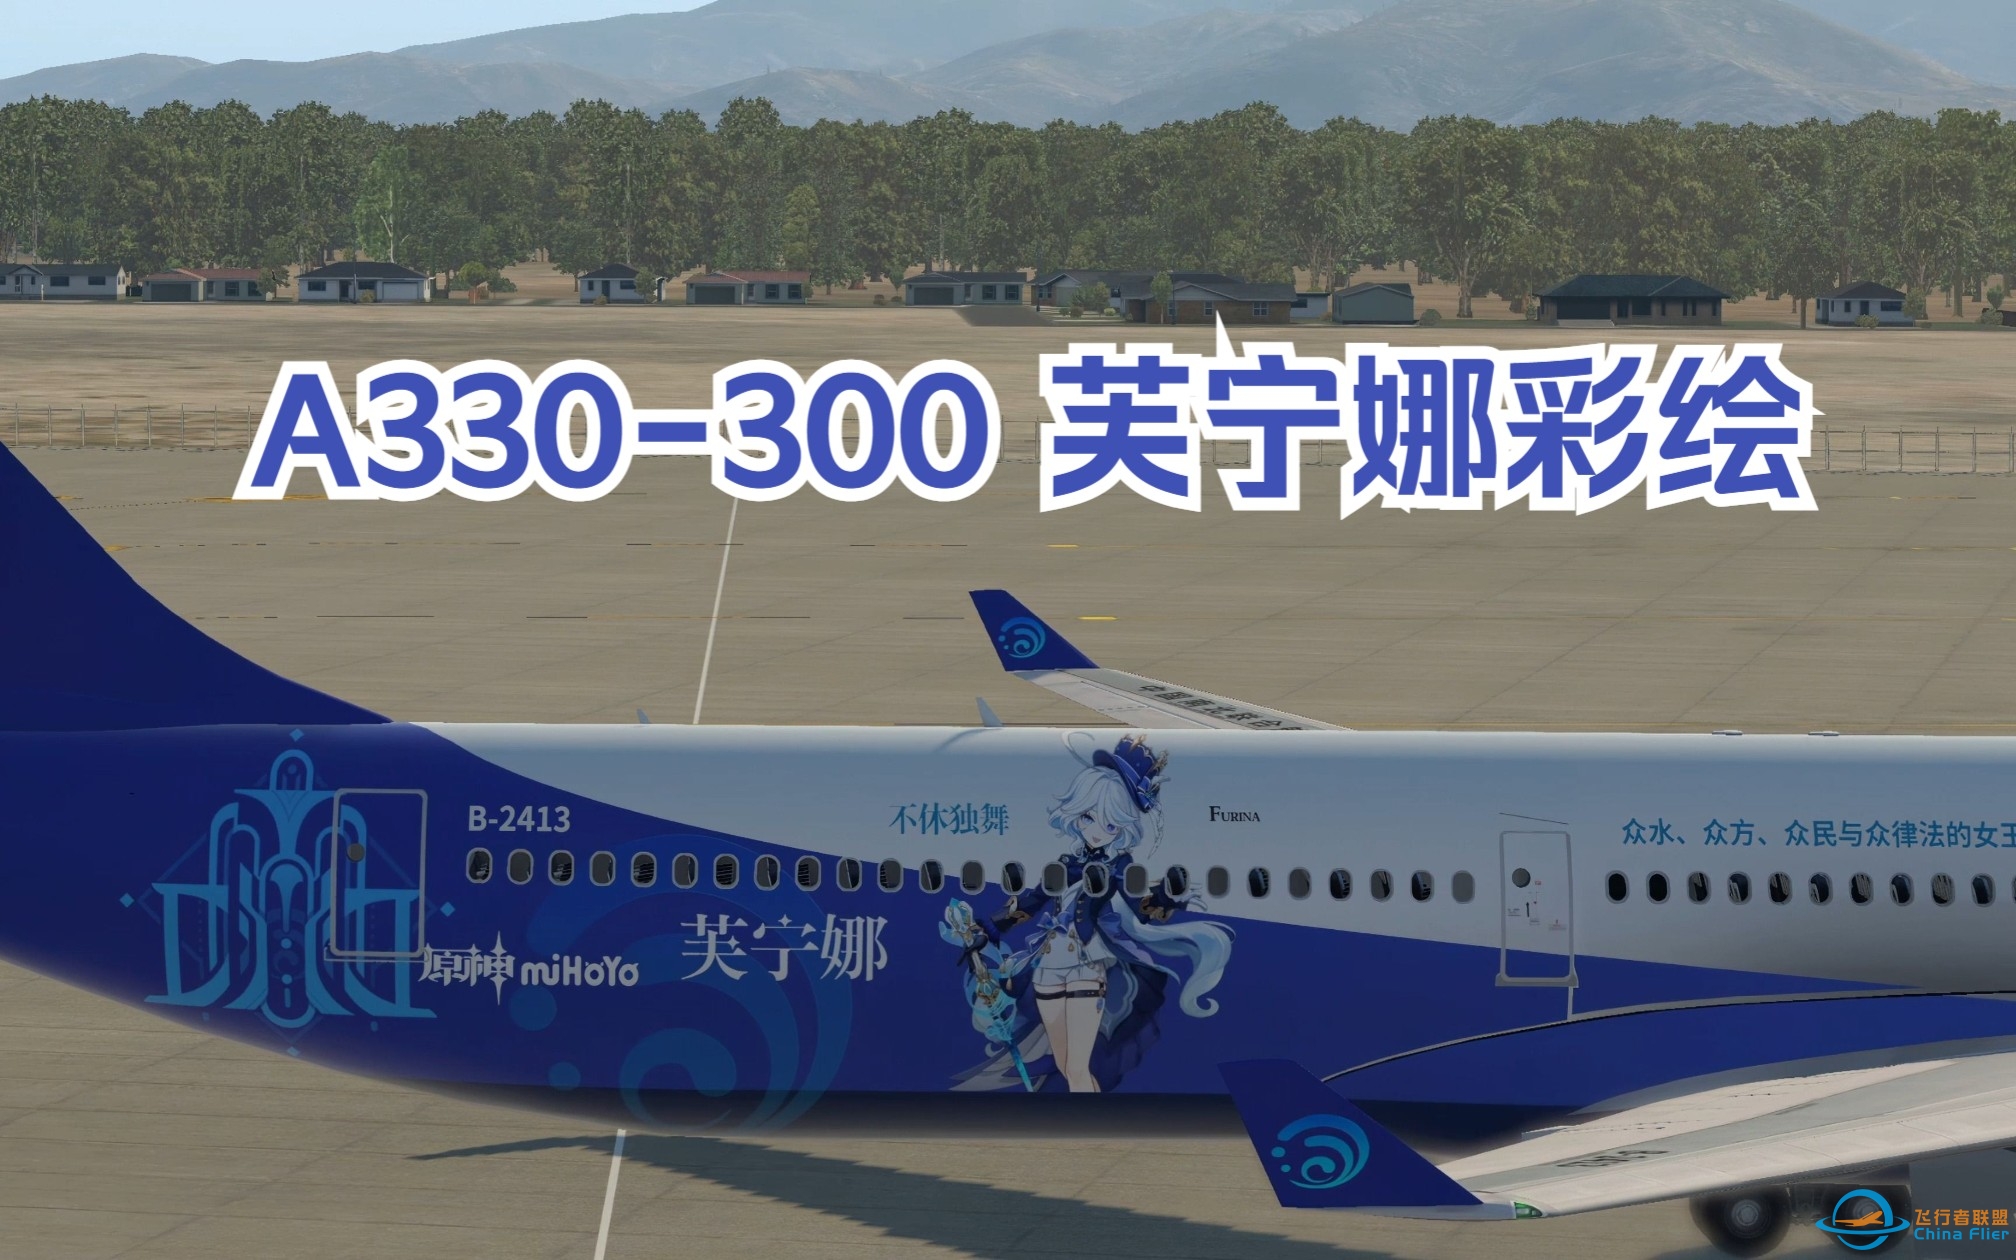 【原神+X-plane11】中国南北联合航空——A330-300芙宁娜彩绘-5037 